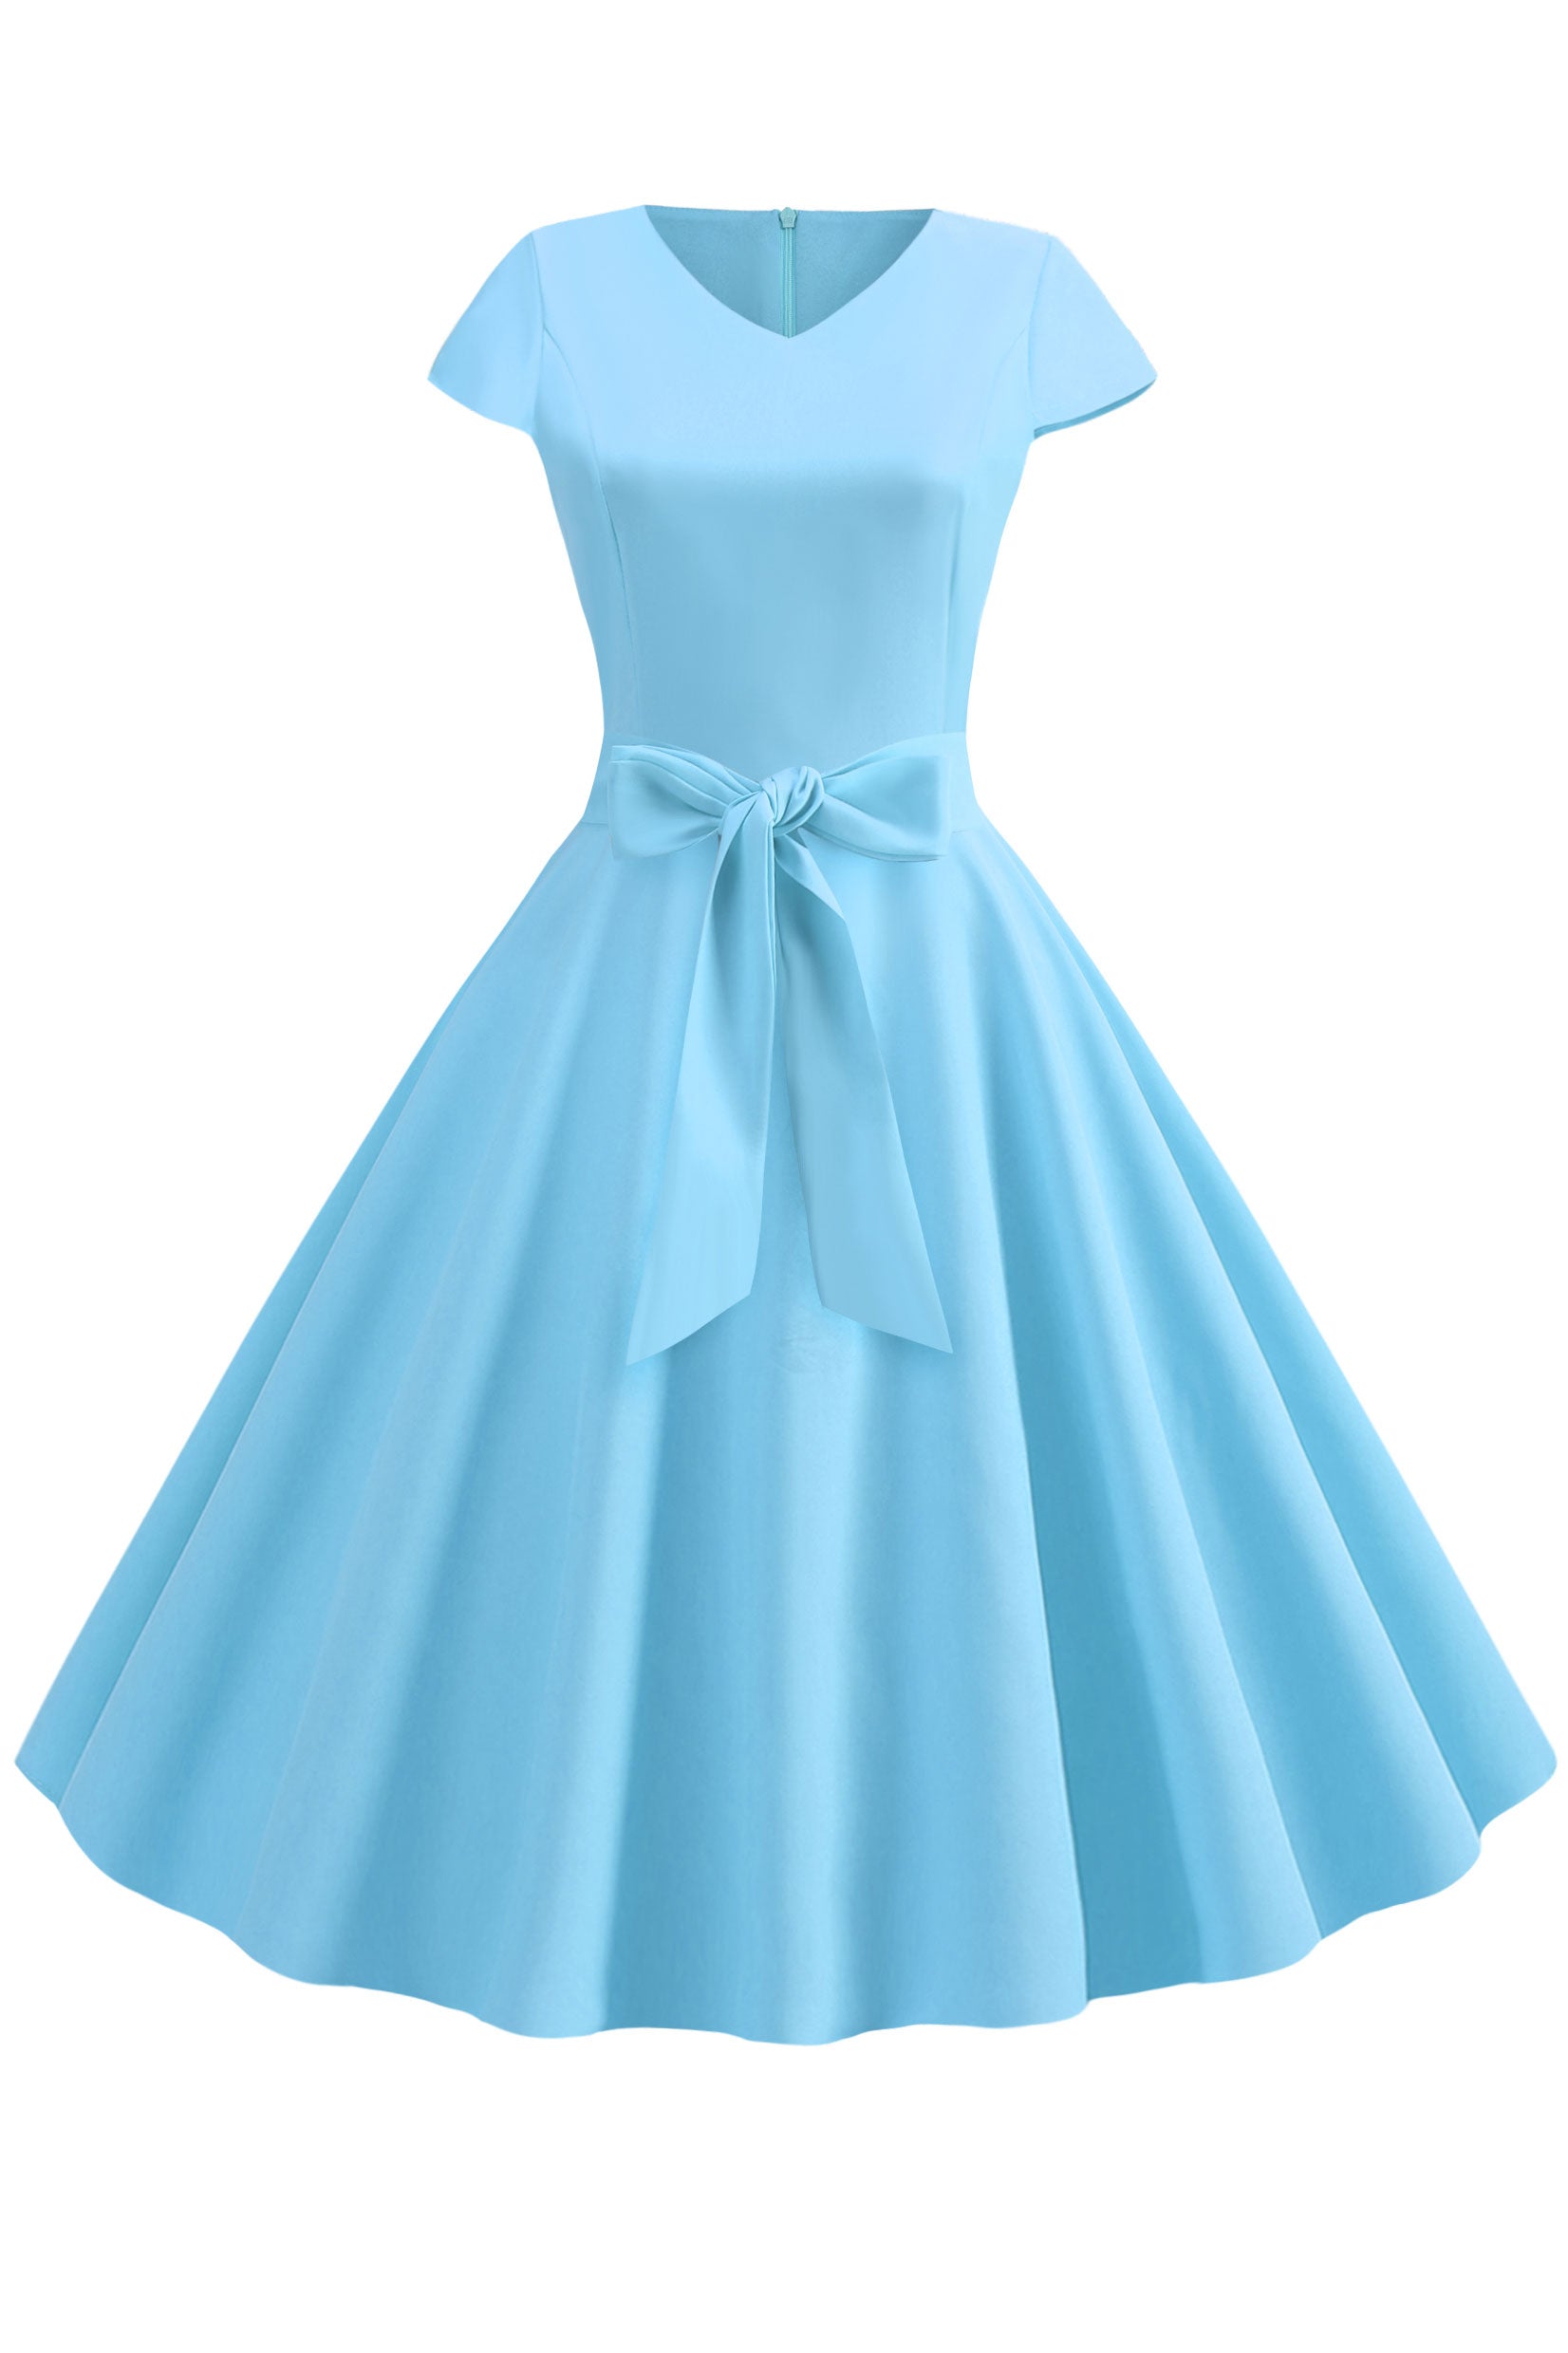 Vintage Hepburn V-neck Bowknot Swing Dress